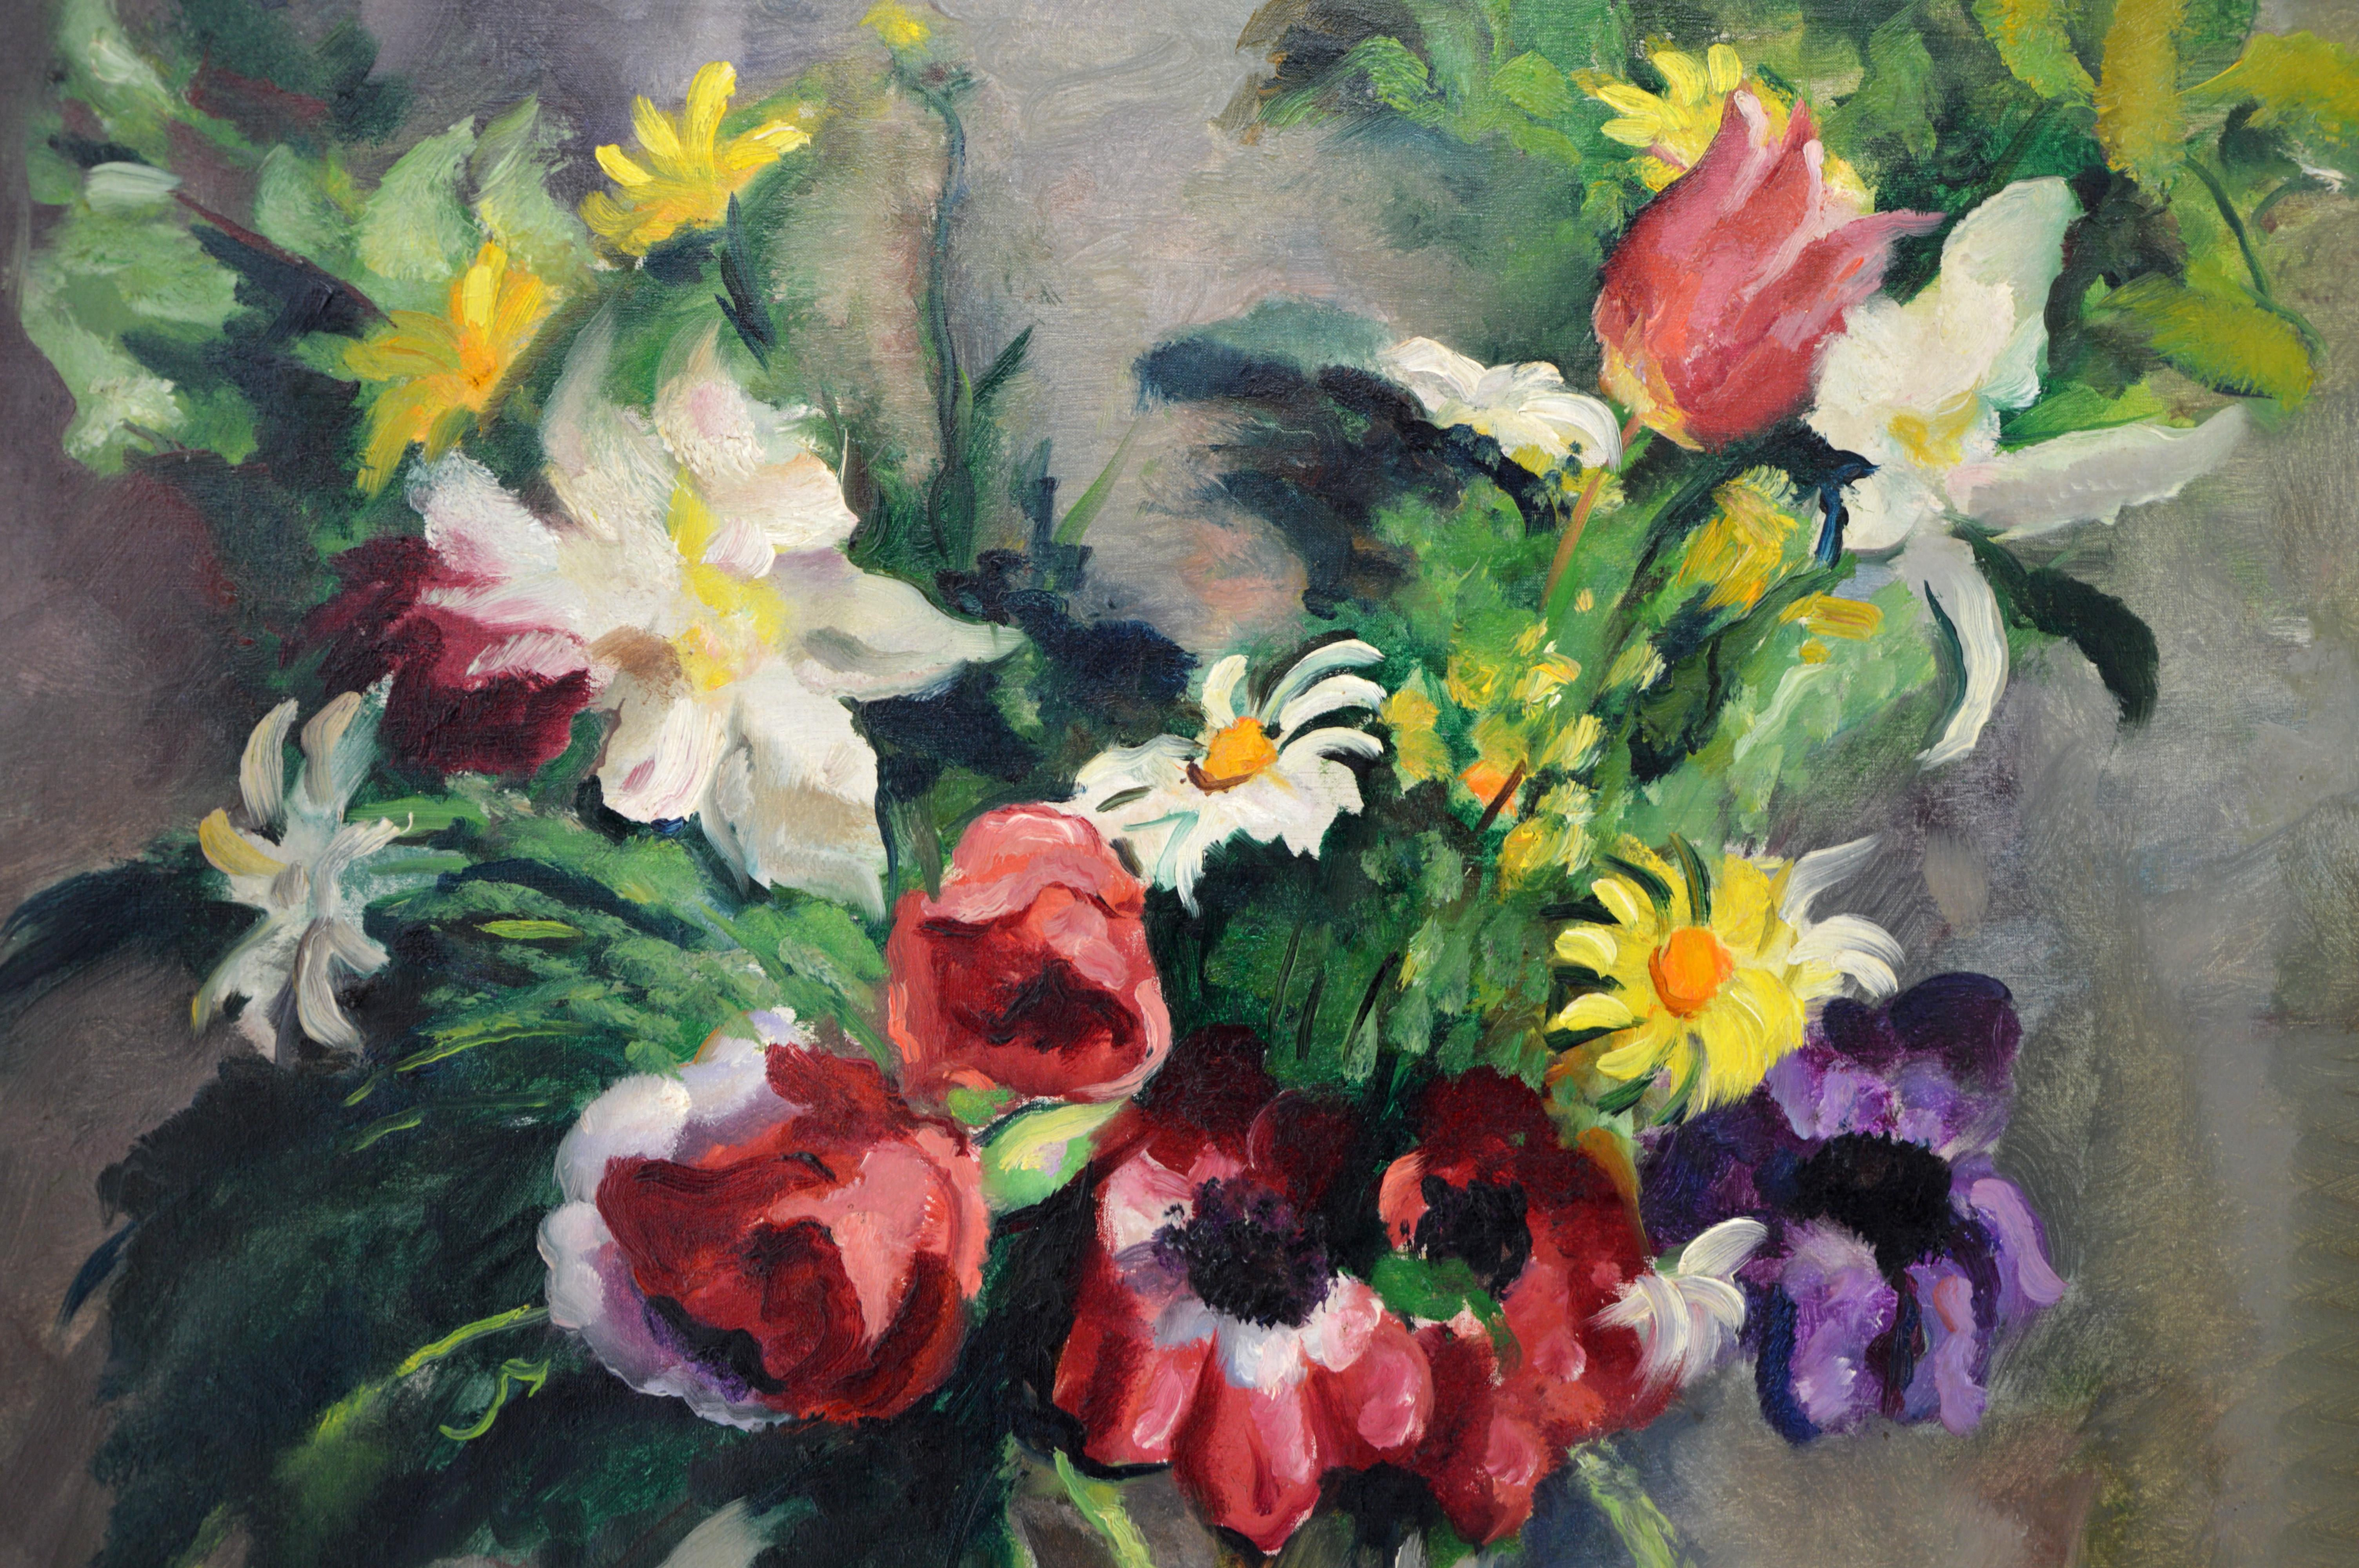 Charles PICART LE DOUX, Bouquet de fleurs sauvages, 1934 - Art déco Painting par Charles Picart le Doux